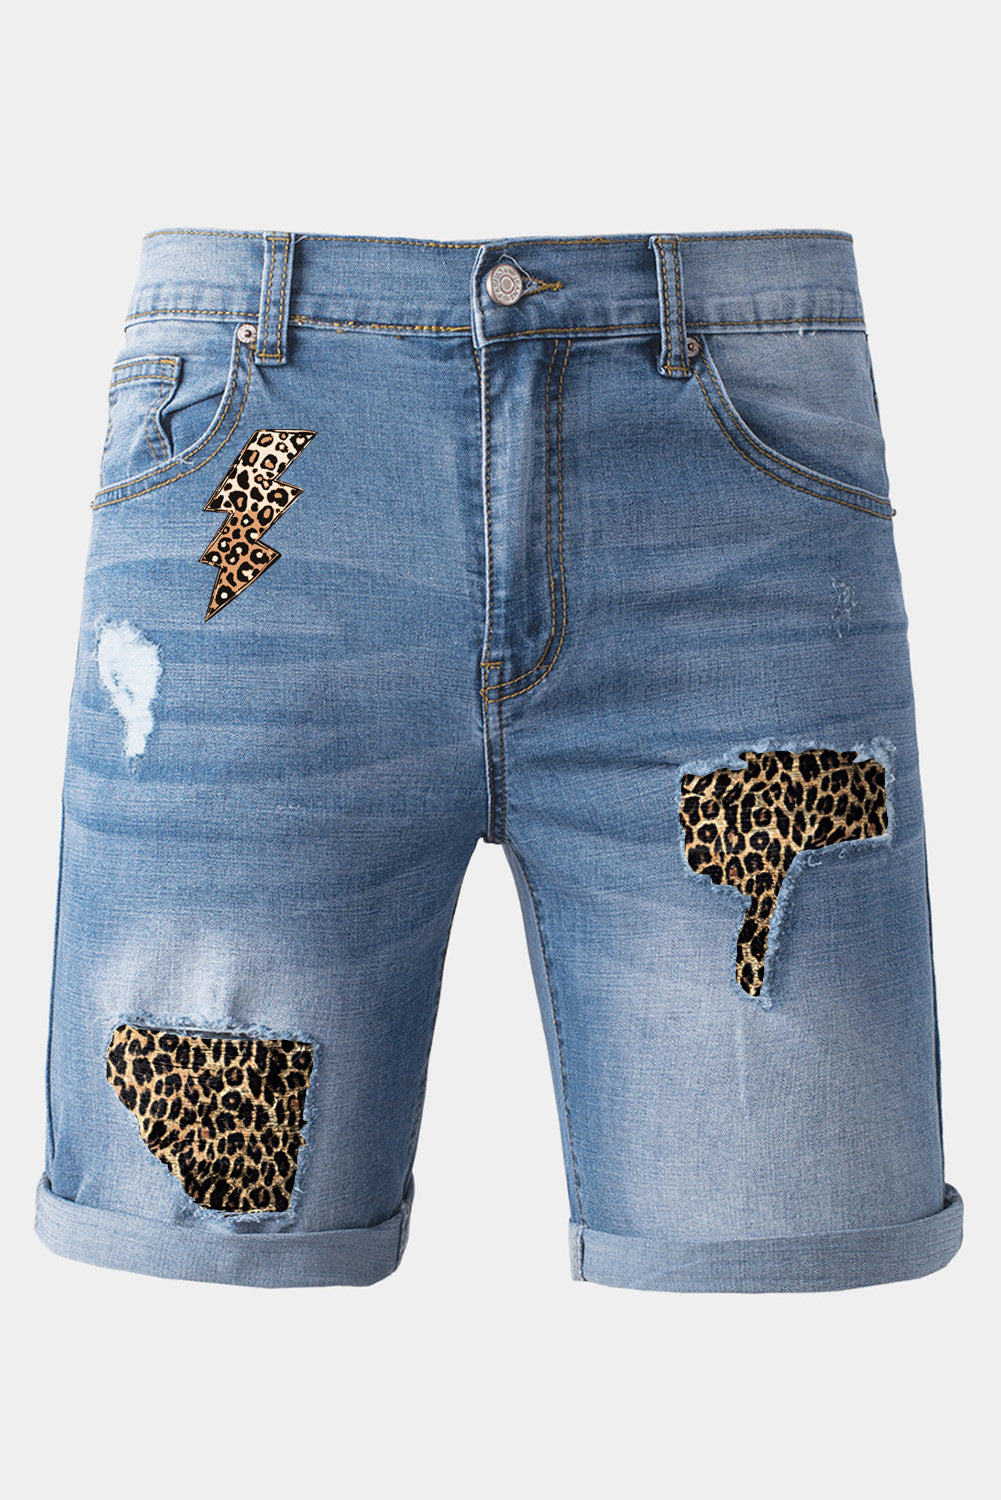 Sky Blue Leopard Lightning Patchwork Skinny Fit Men's Jeans Men's Pants JT's Designer Fashion